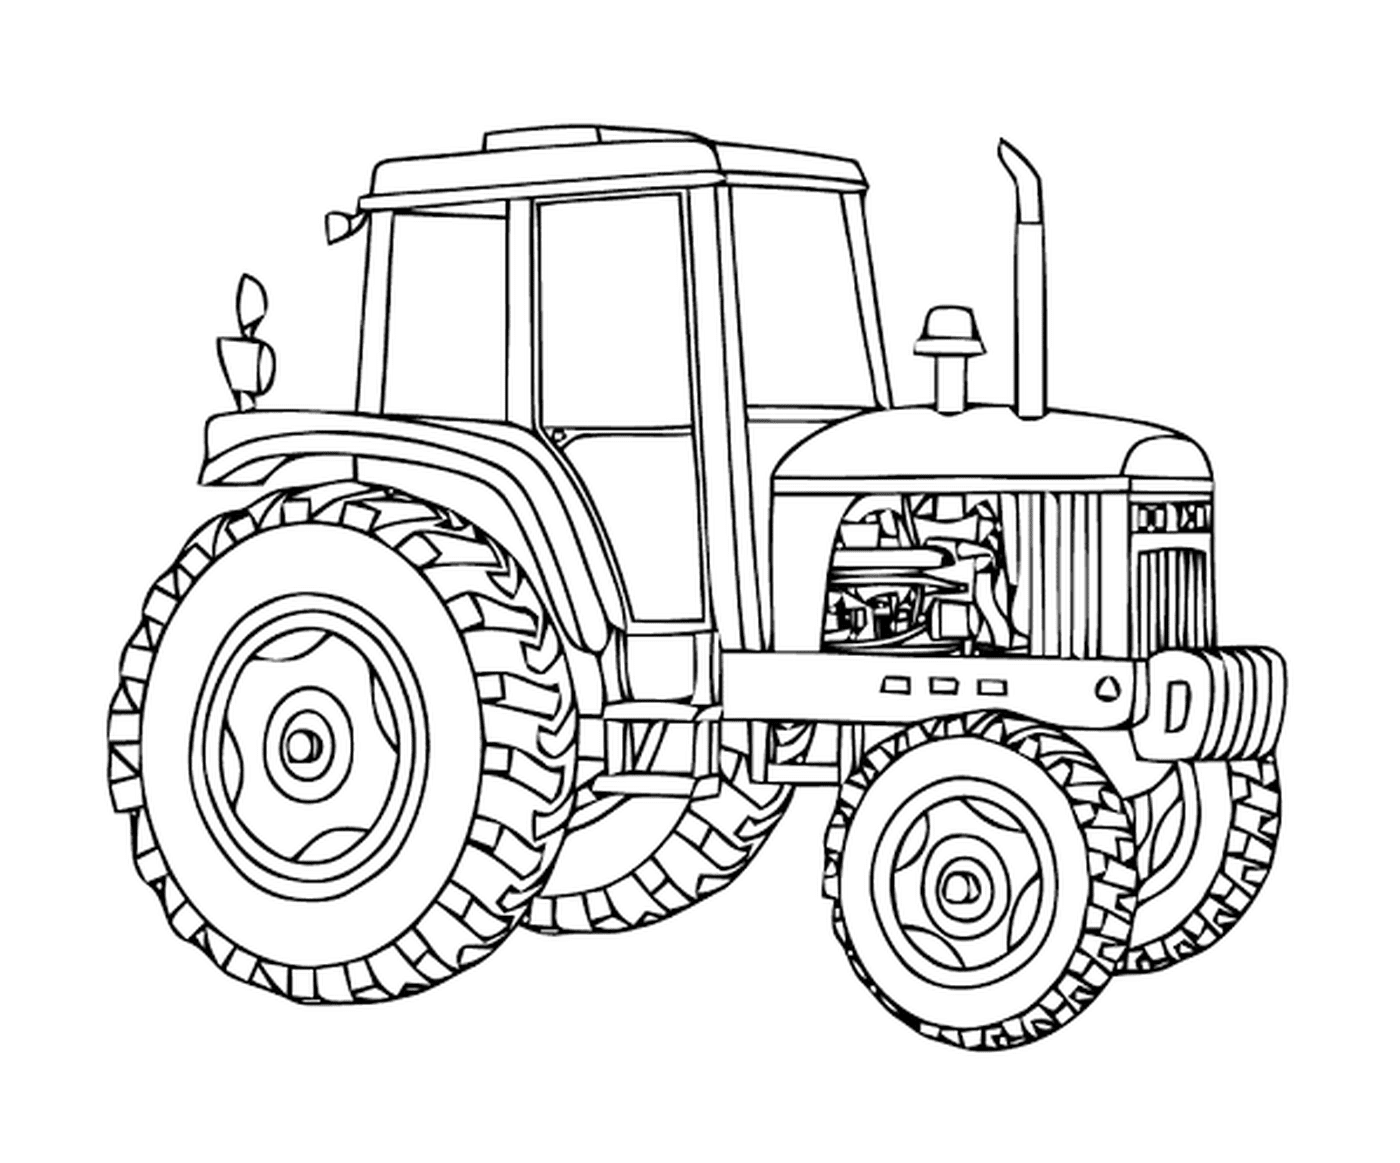  Массей Фергюсон Трактор, мощная сельскохозяйственная машина 